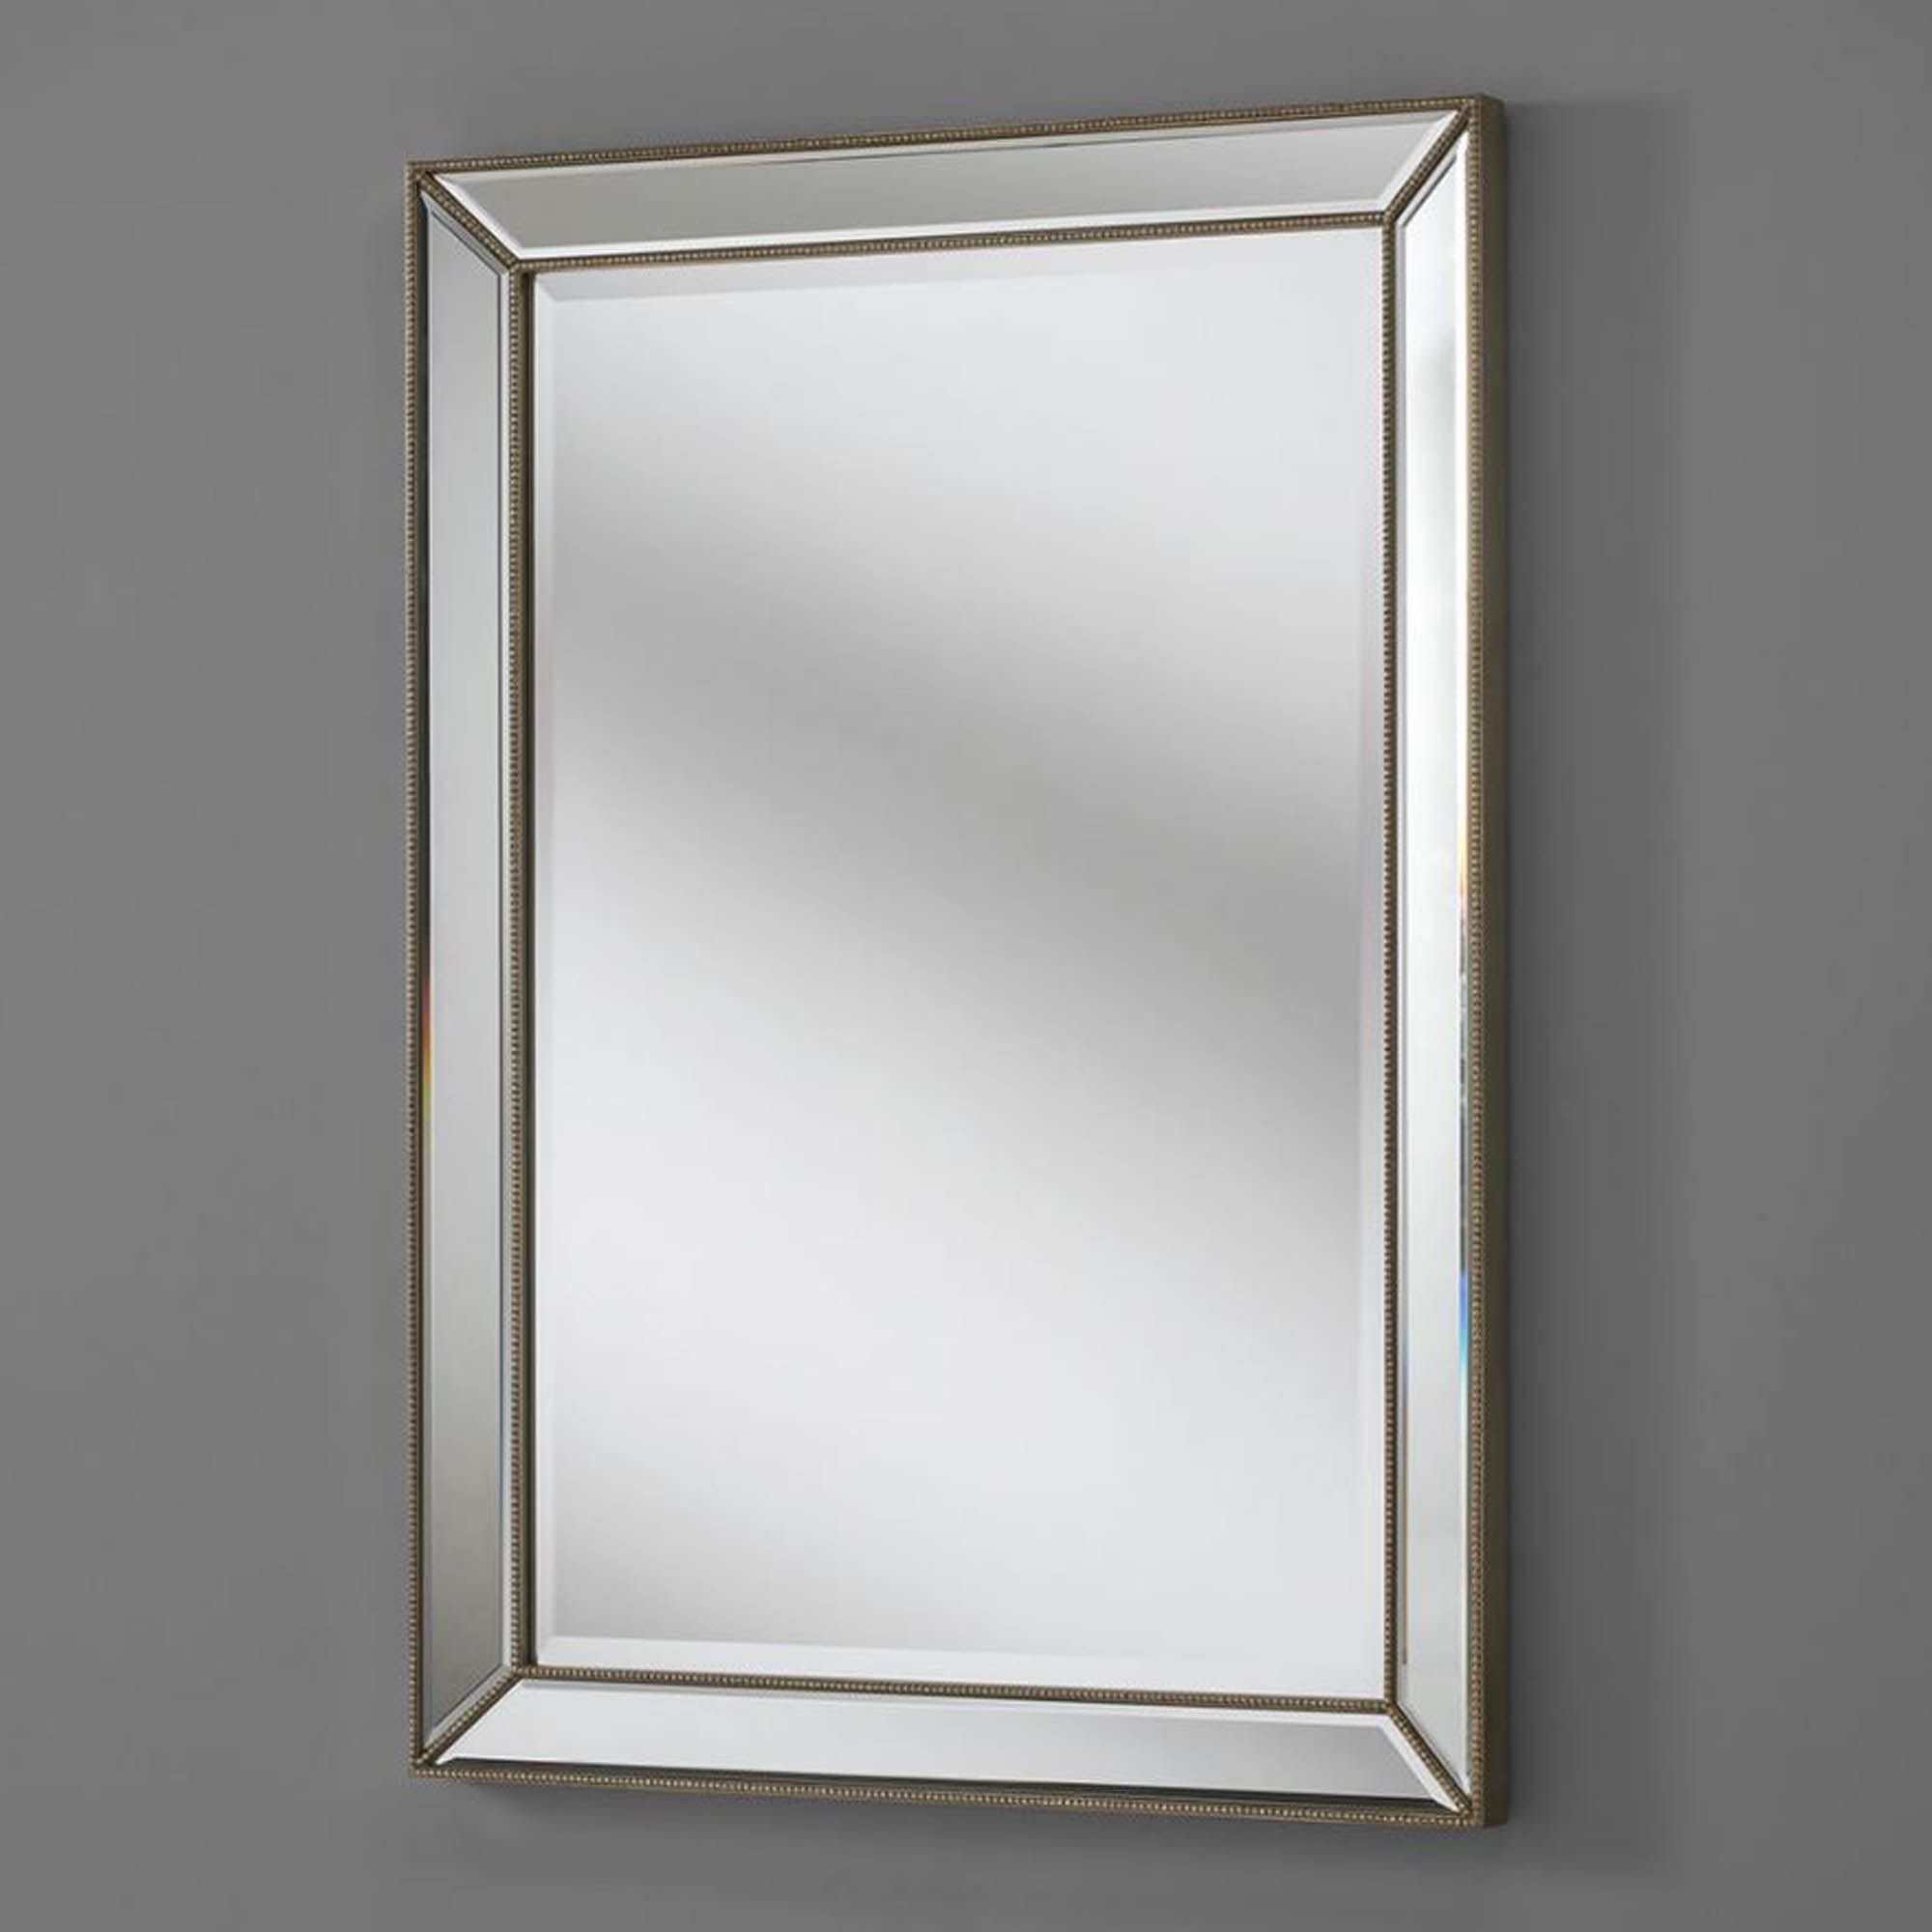 Silver Venetian Rectangular Wall Mirror | Decor | Homesdirect365 With Rectangular Grid Wall Mirrors (View 1 of 15)